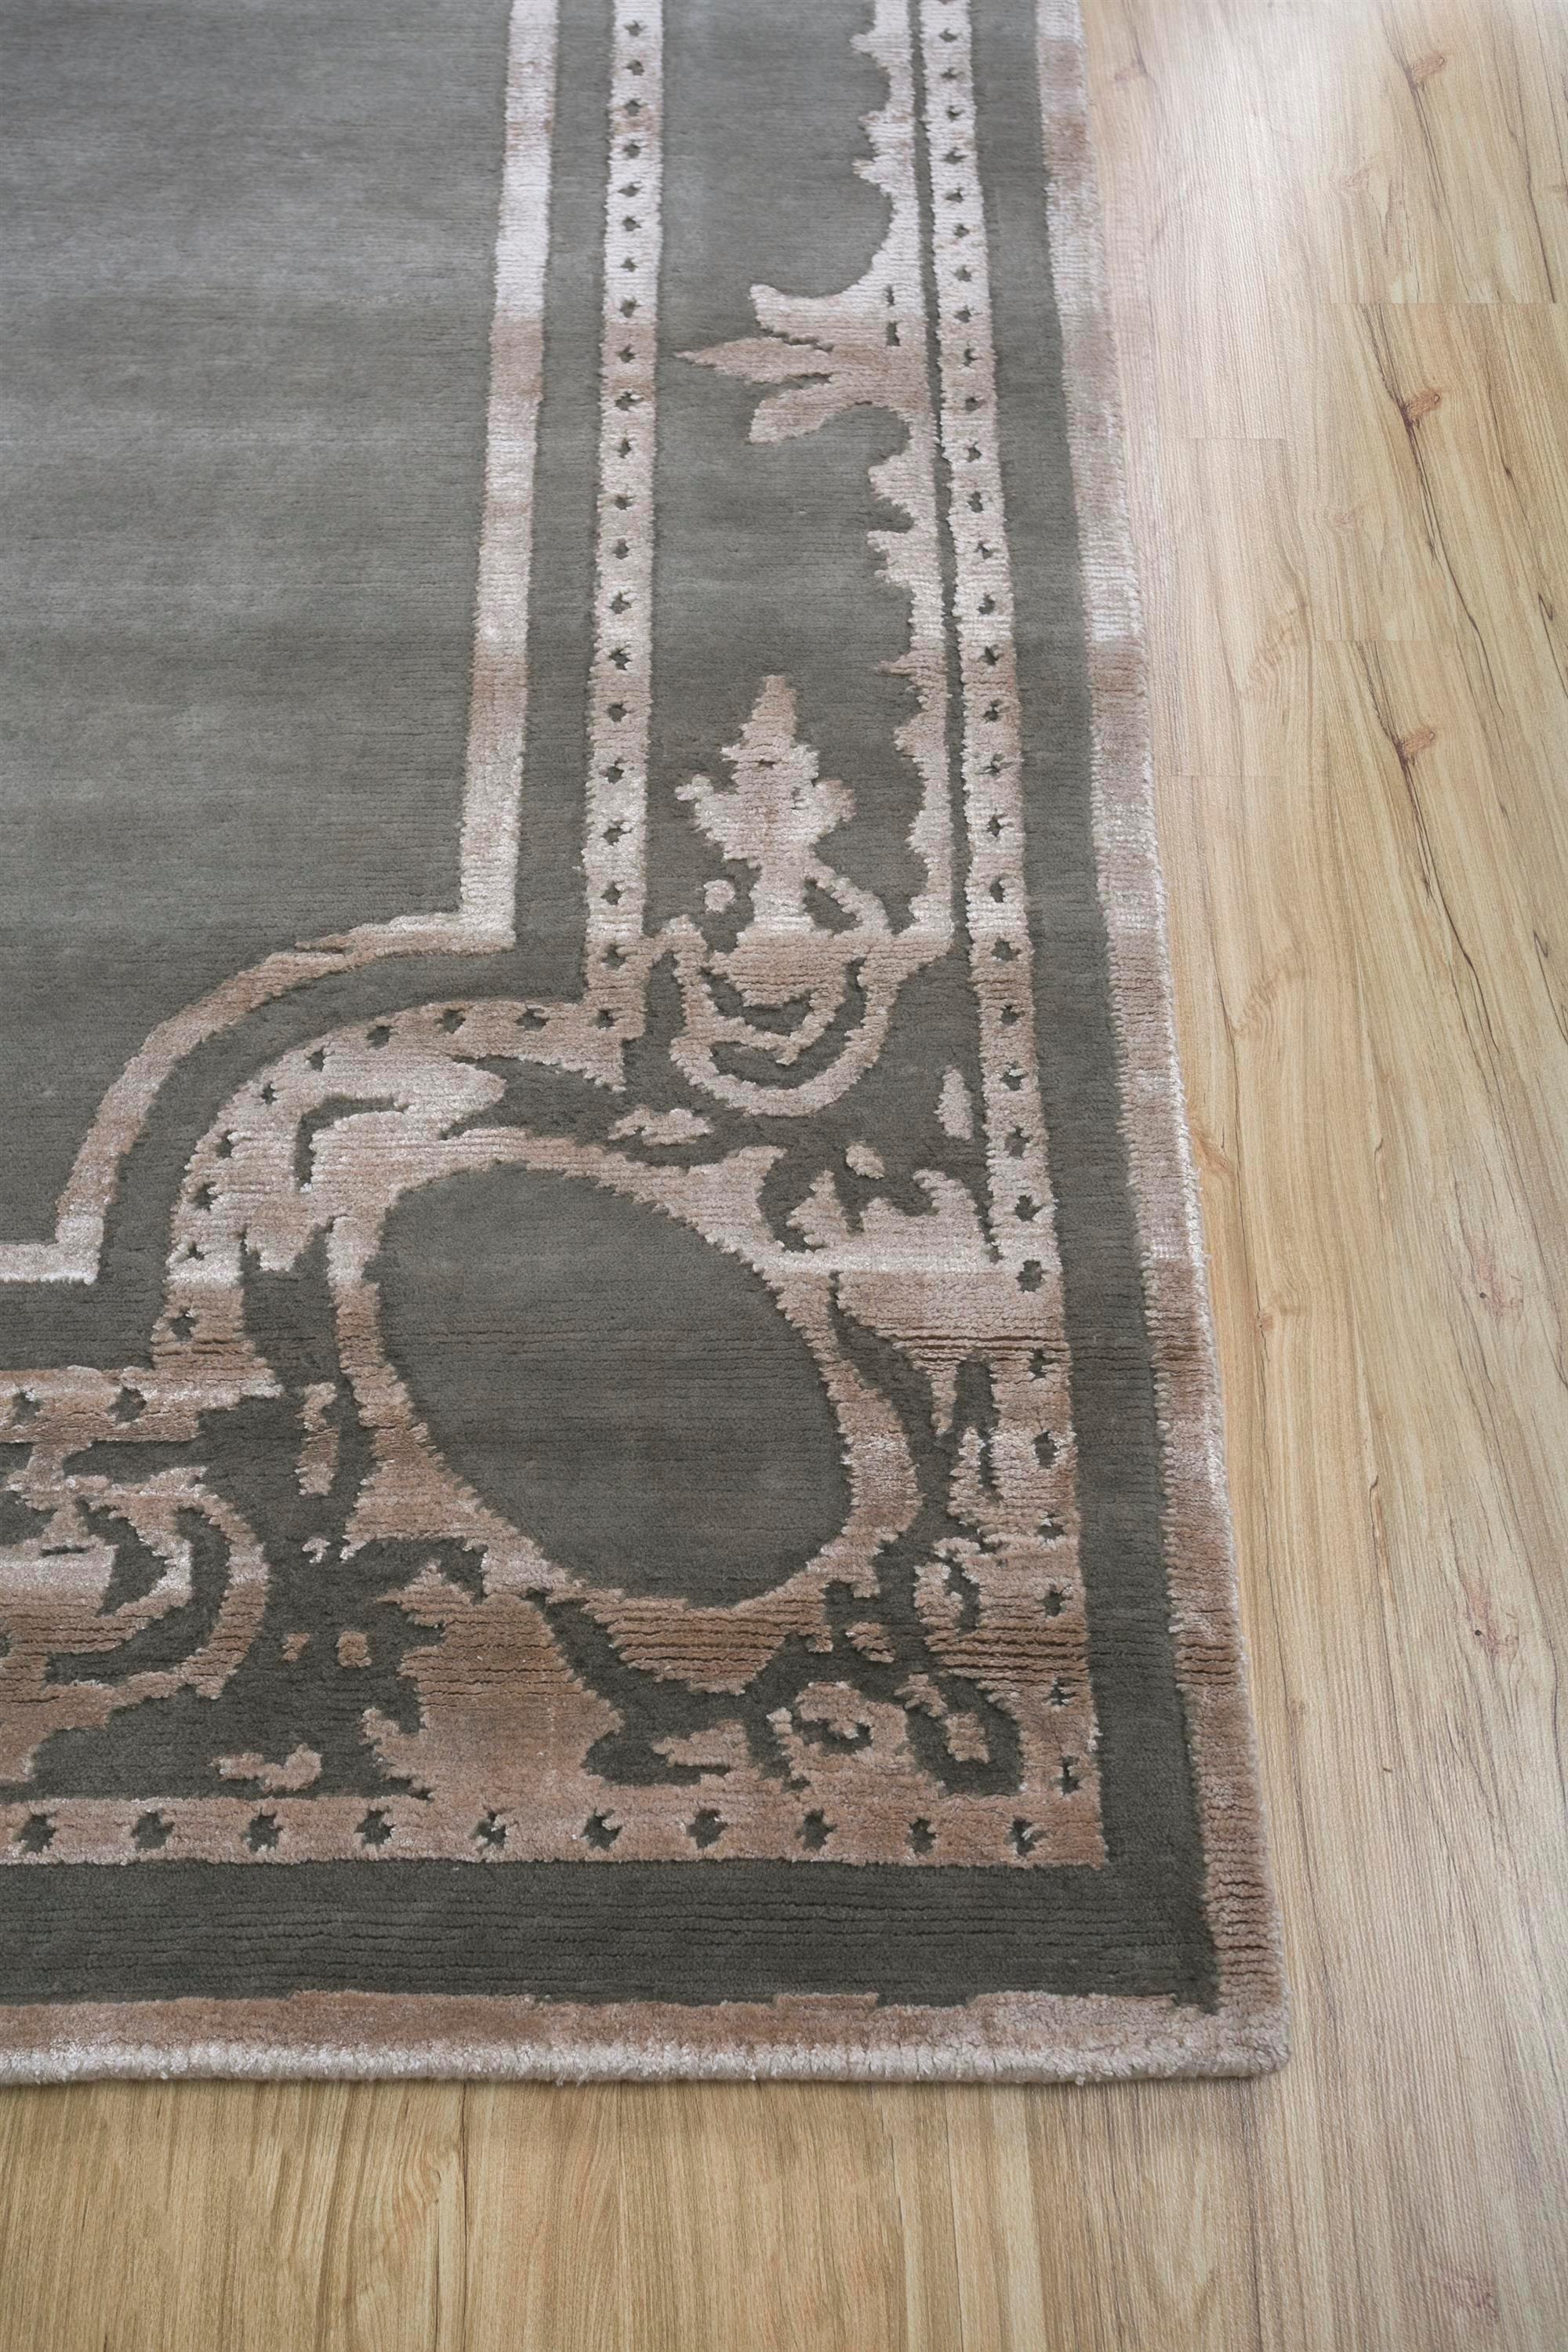 Un tapis peut-il redéfinir l'ambiance de votre espace ? Découvrez ce tapis moderne noué à la main. Avec sa palette ton sur ton, sa base en nickel et sa bordure en café clair, il rehausse sans effort l'ambiance de n'importe quelle pièce. Fabriqué à